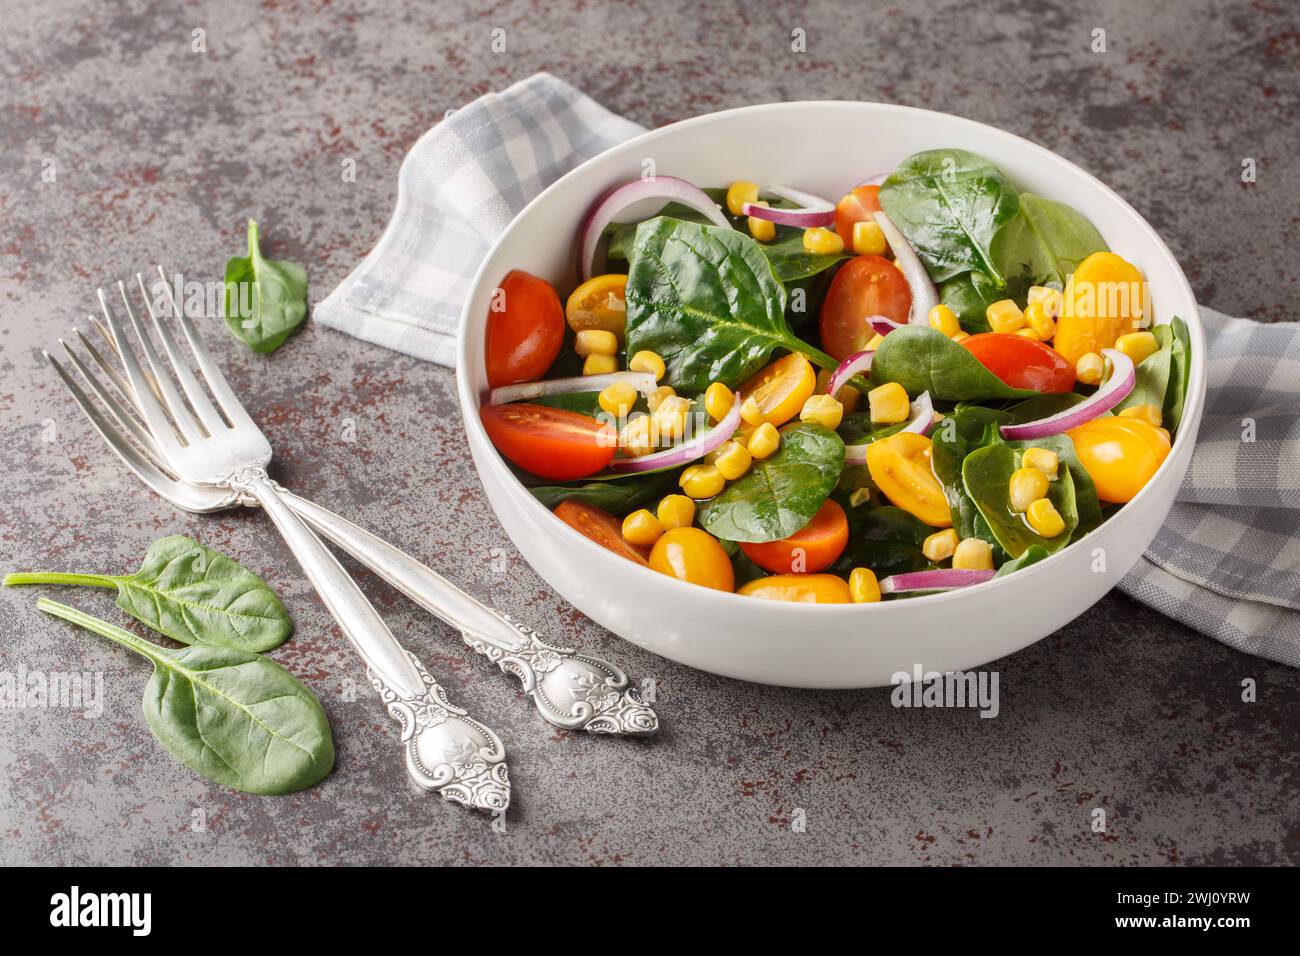 Salade végétarienne diététique de bébés épinards, maïs, tomates cerises et oignons vêtus d'huile d'olive gros plan dans un bol sur la table. Horizontal Banque D'Images